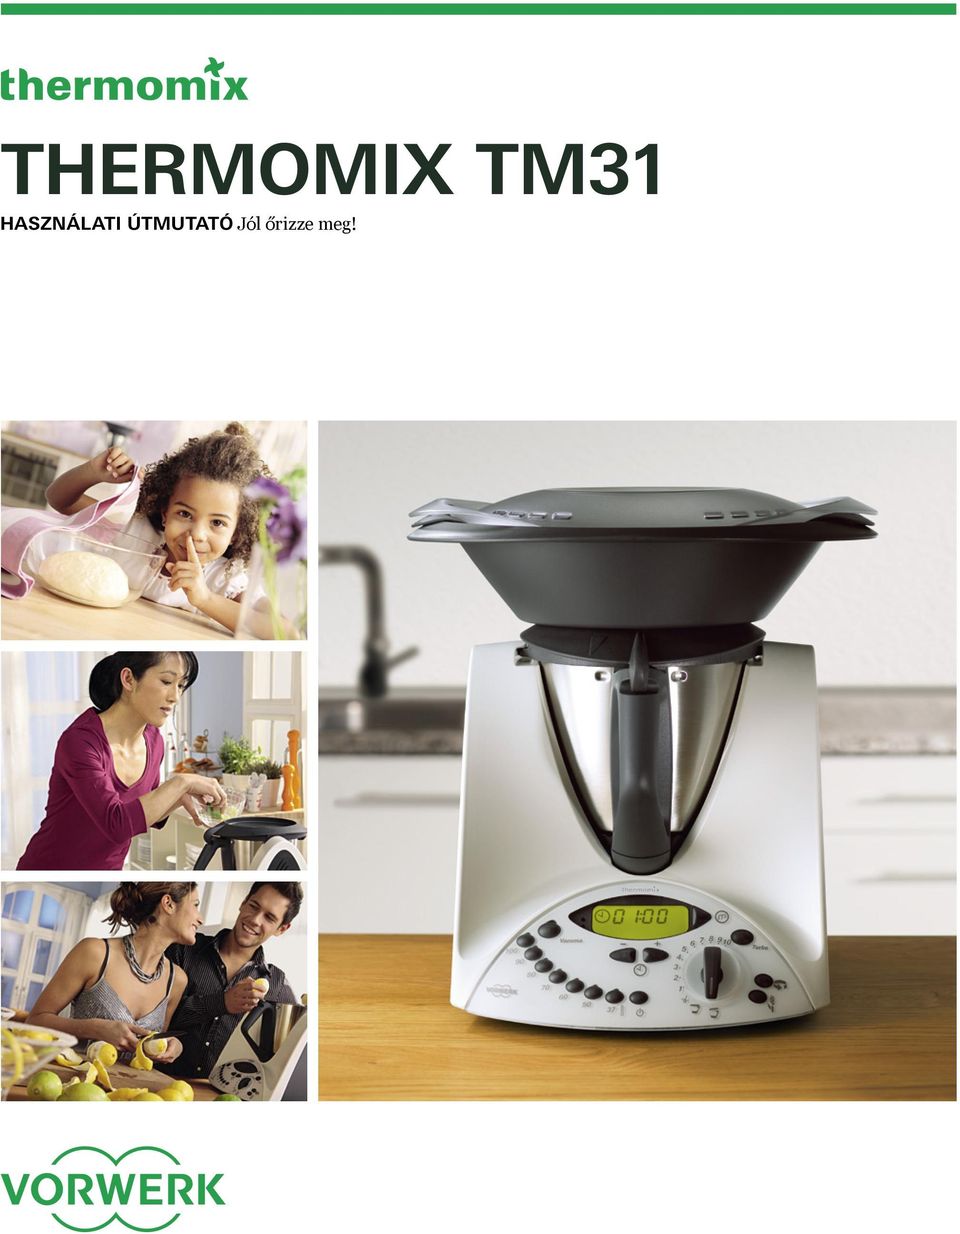 Thermomix TM31. Használati útmutató Jól őrizze meg! - PDF Ingyenes letöltés